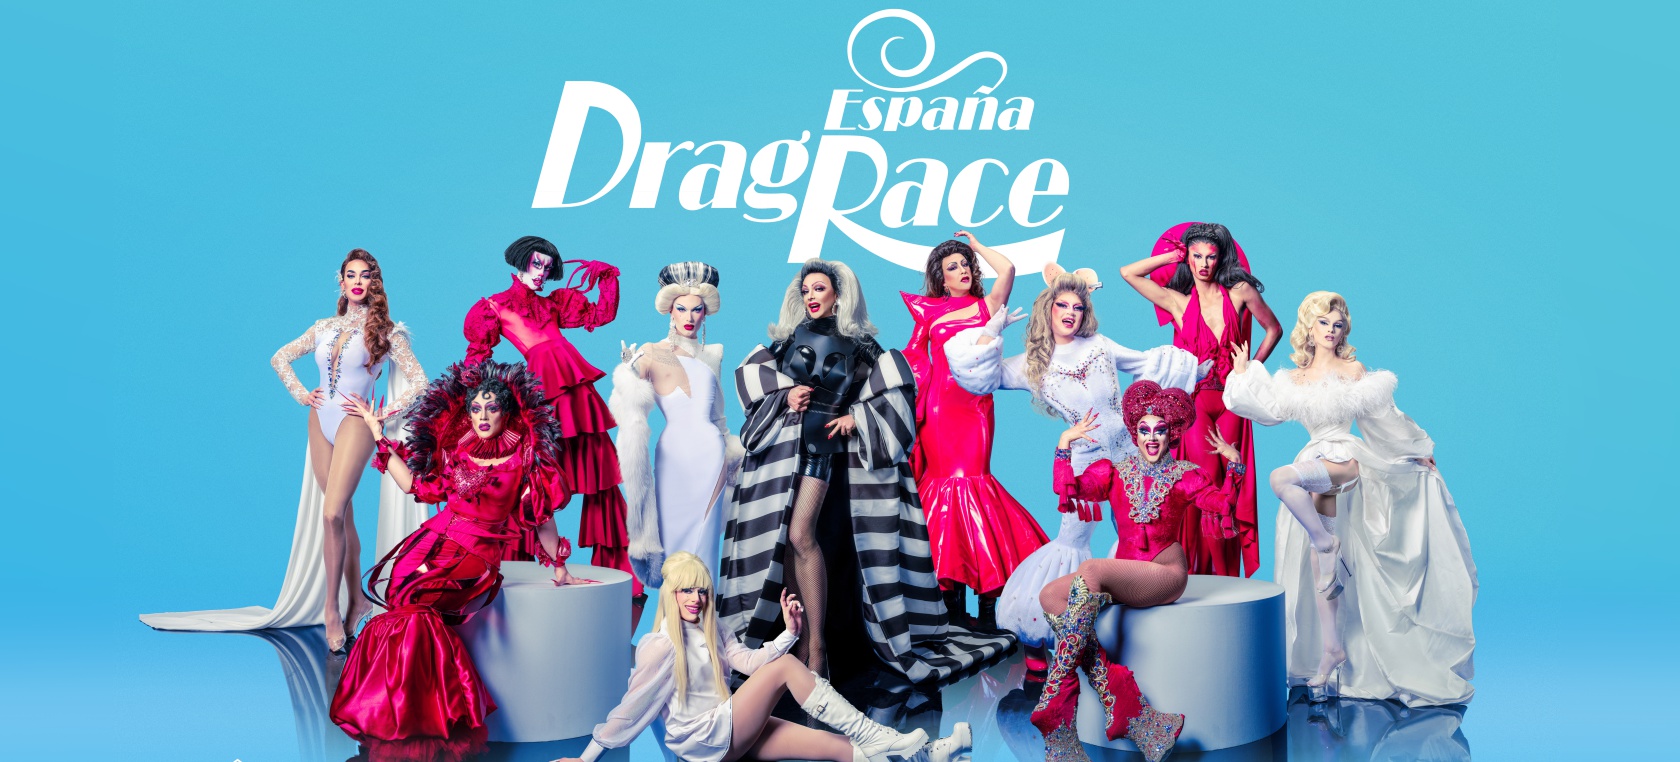 ¿Qué edad tienen las concursantes de ‘Drag Race España’?